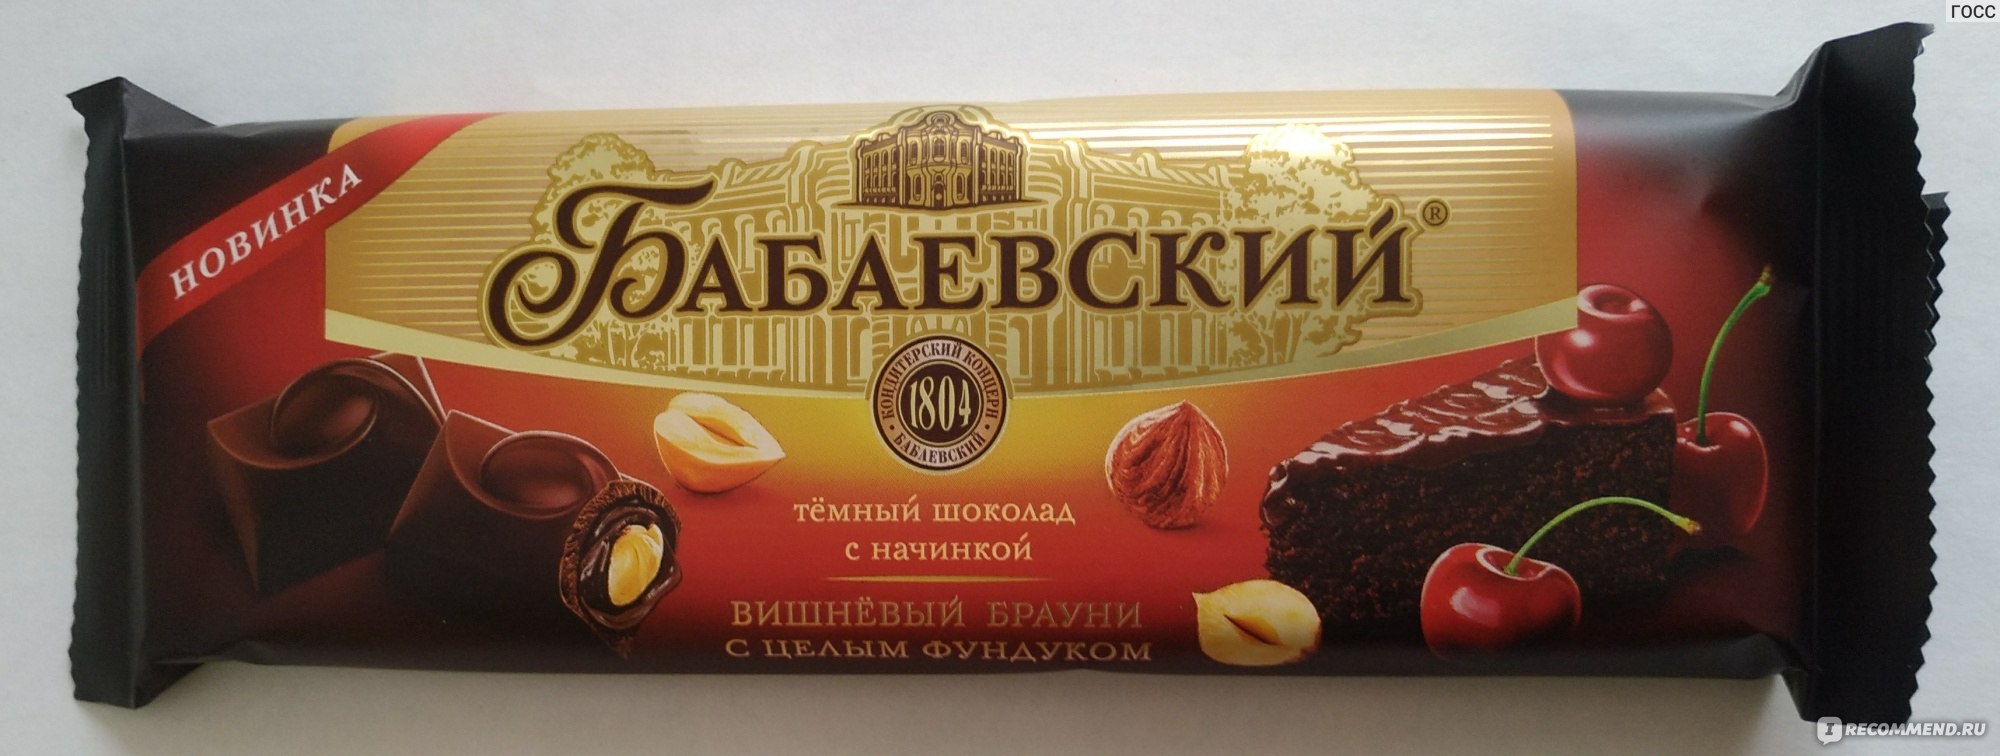 Бабаевский темный шоколад с вишневым Брауни